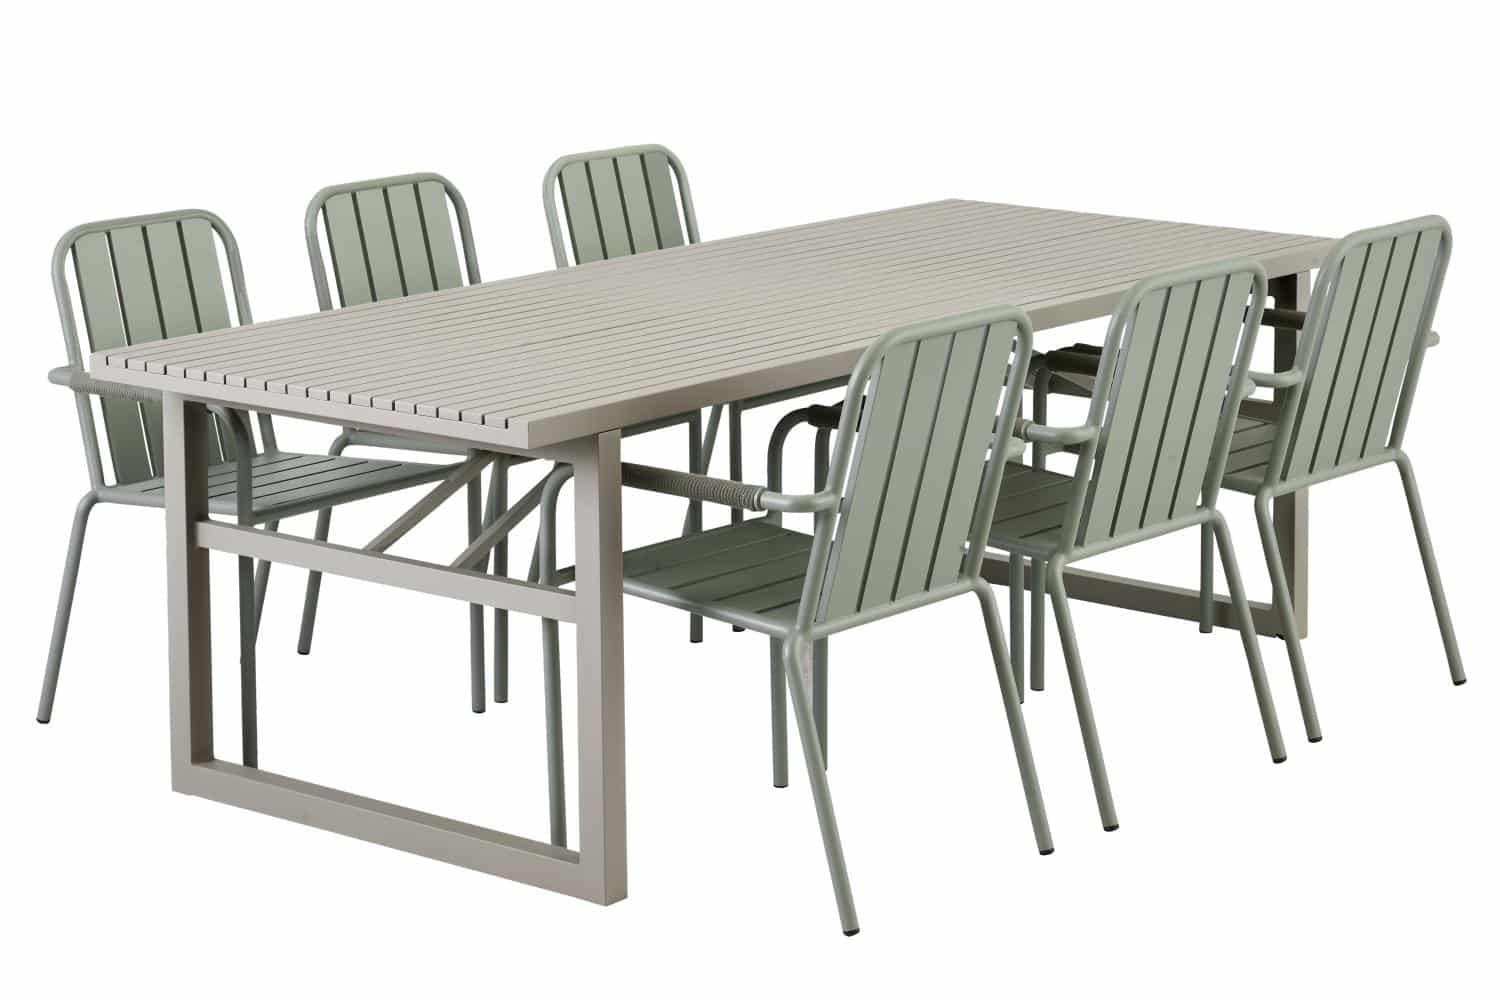 Brafab Vevi Matbord khaki är ett matbord 230×95 cm tillverkat i beige/khakifärgad underhållsfri aluminium. Med 6 st Innes gröna karmstolar.